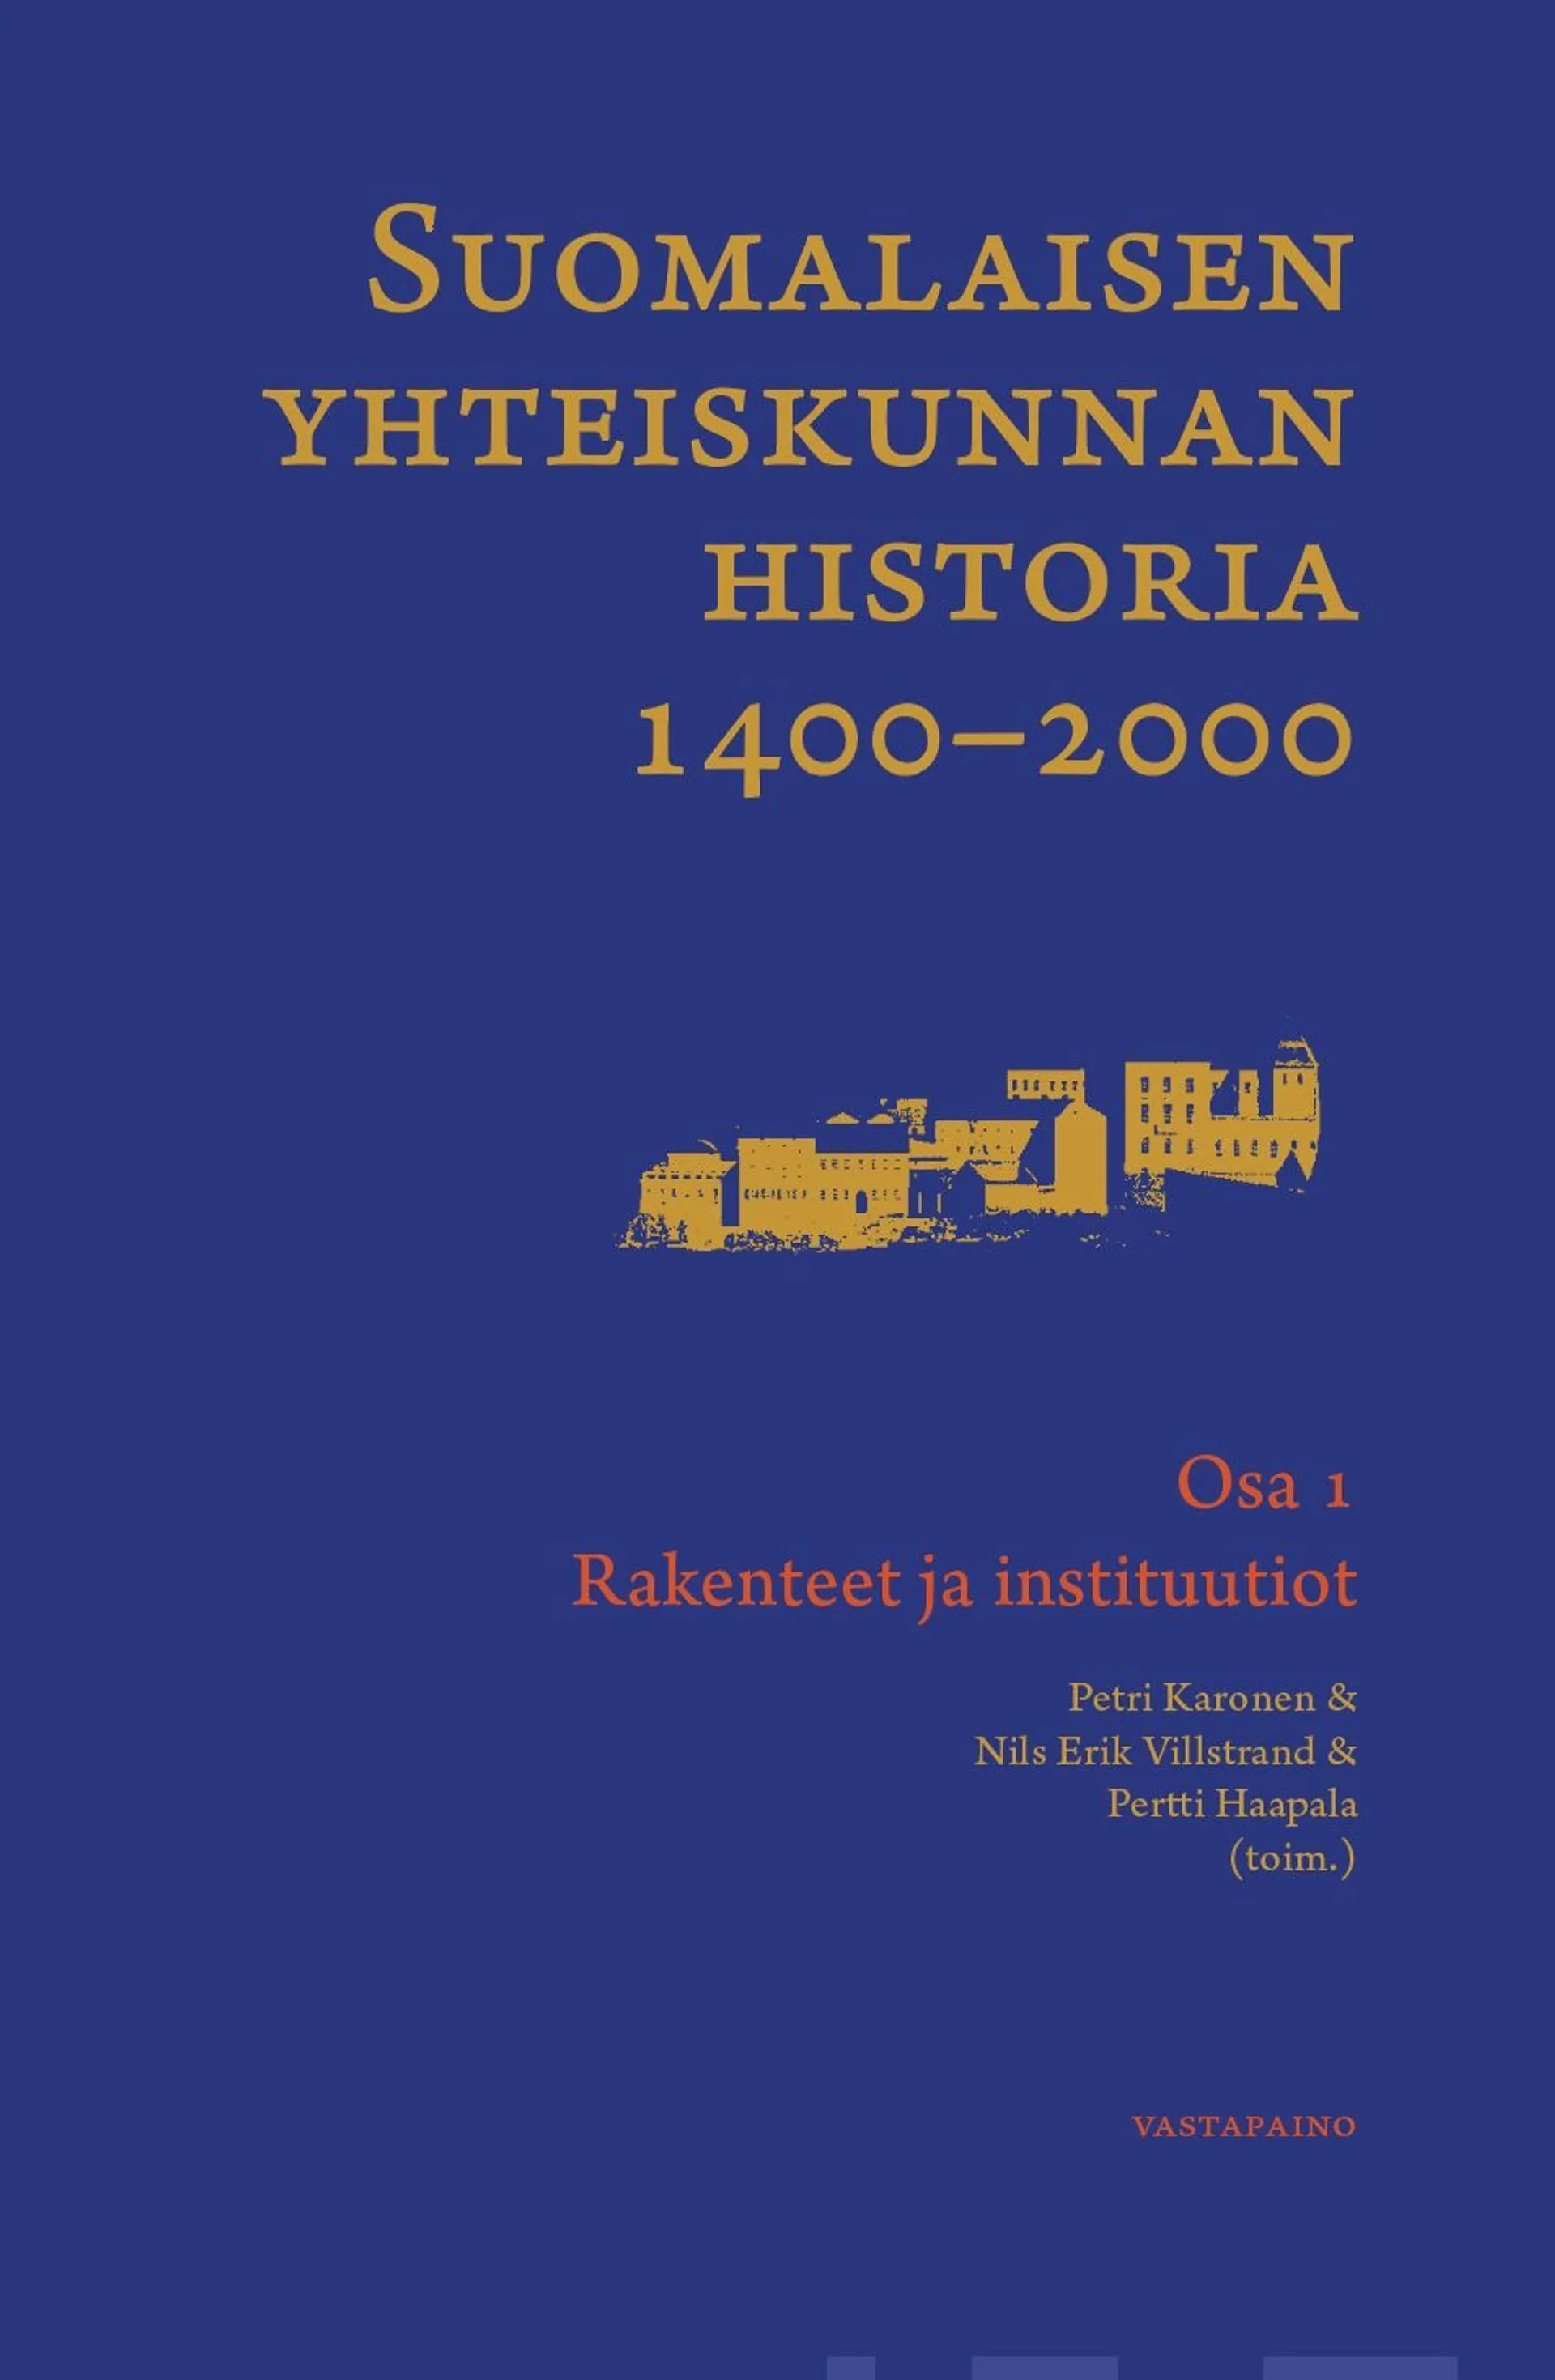 Suomalaisen yhteiskunnan historia 1400-2000 - Osa 1: Rakenteet ja instituutiot